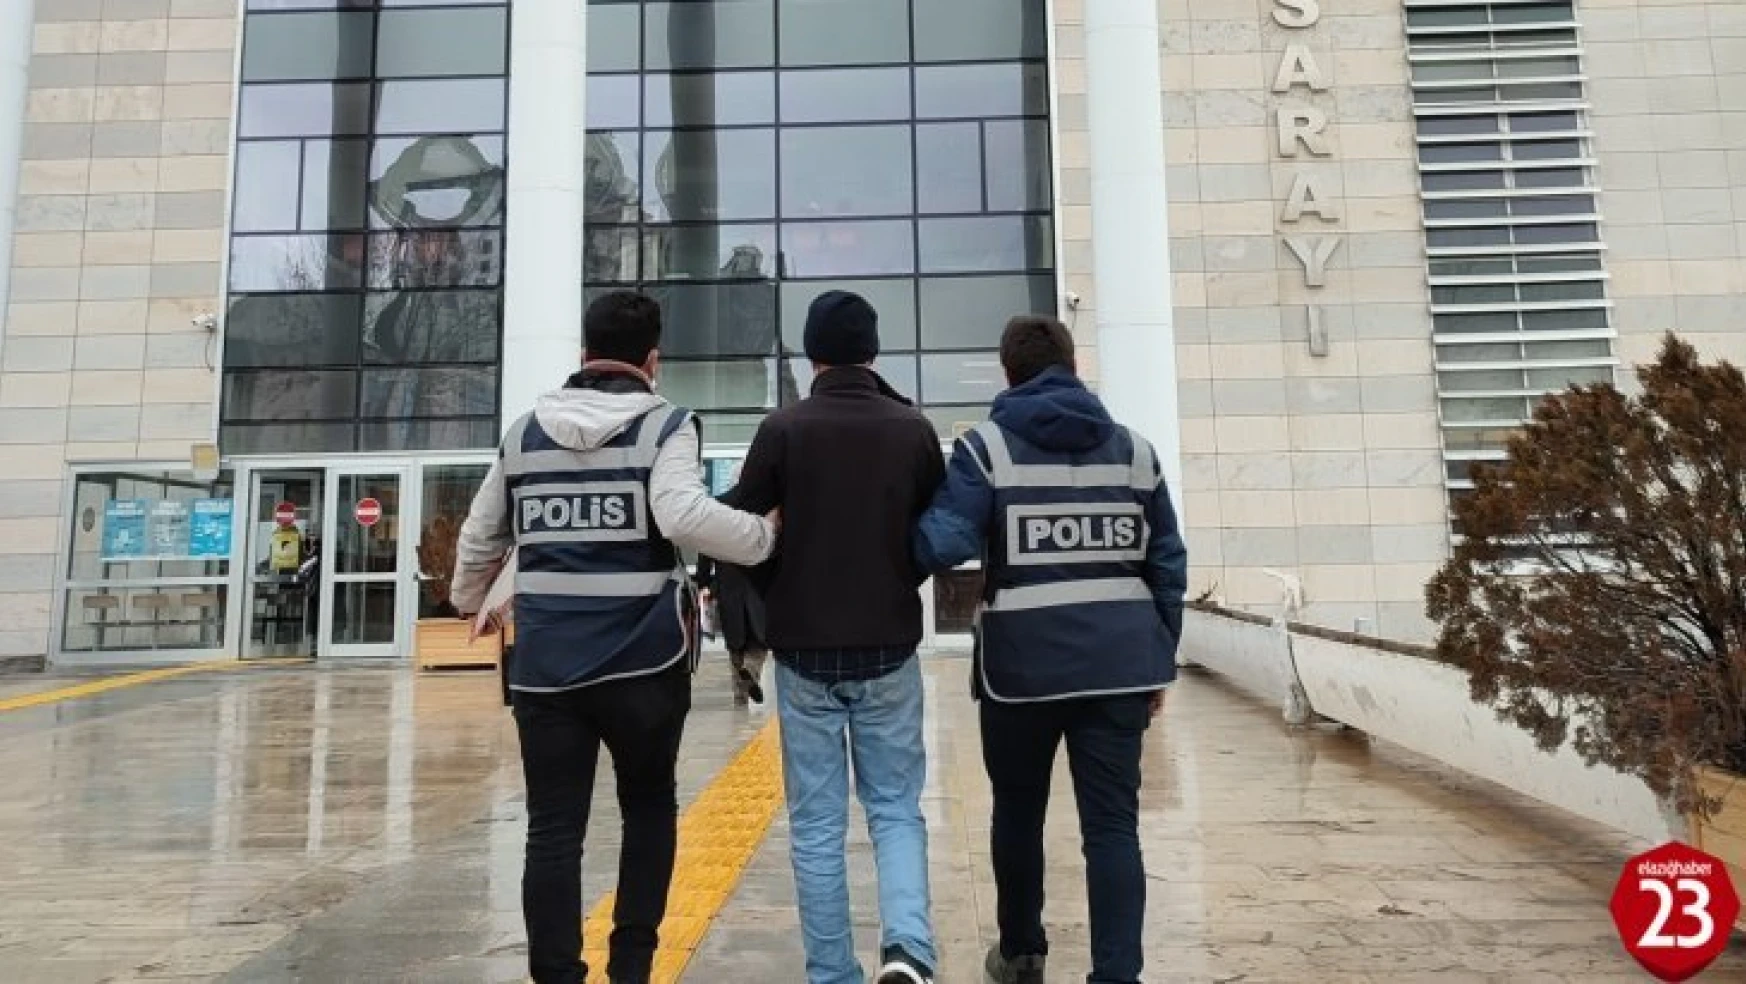 Elazığ'da 28 ayrı suç kaydı olan şüpheli kombi çaldıktan sonra yakalandı